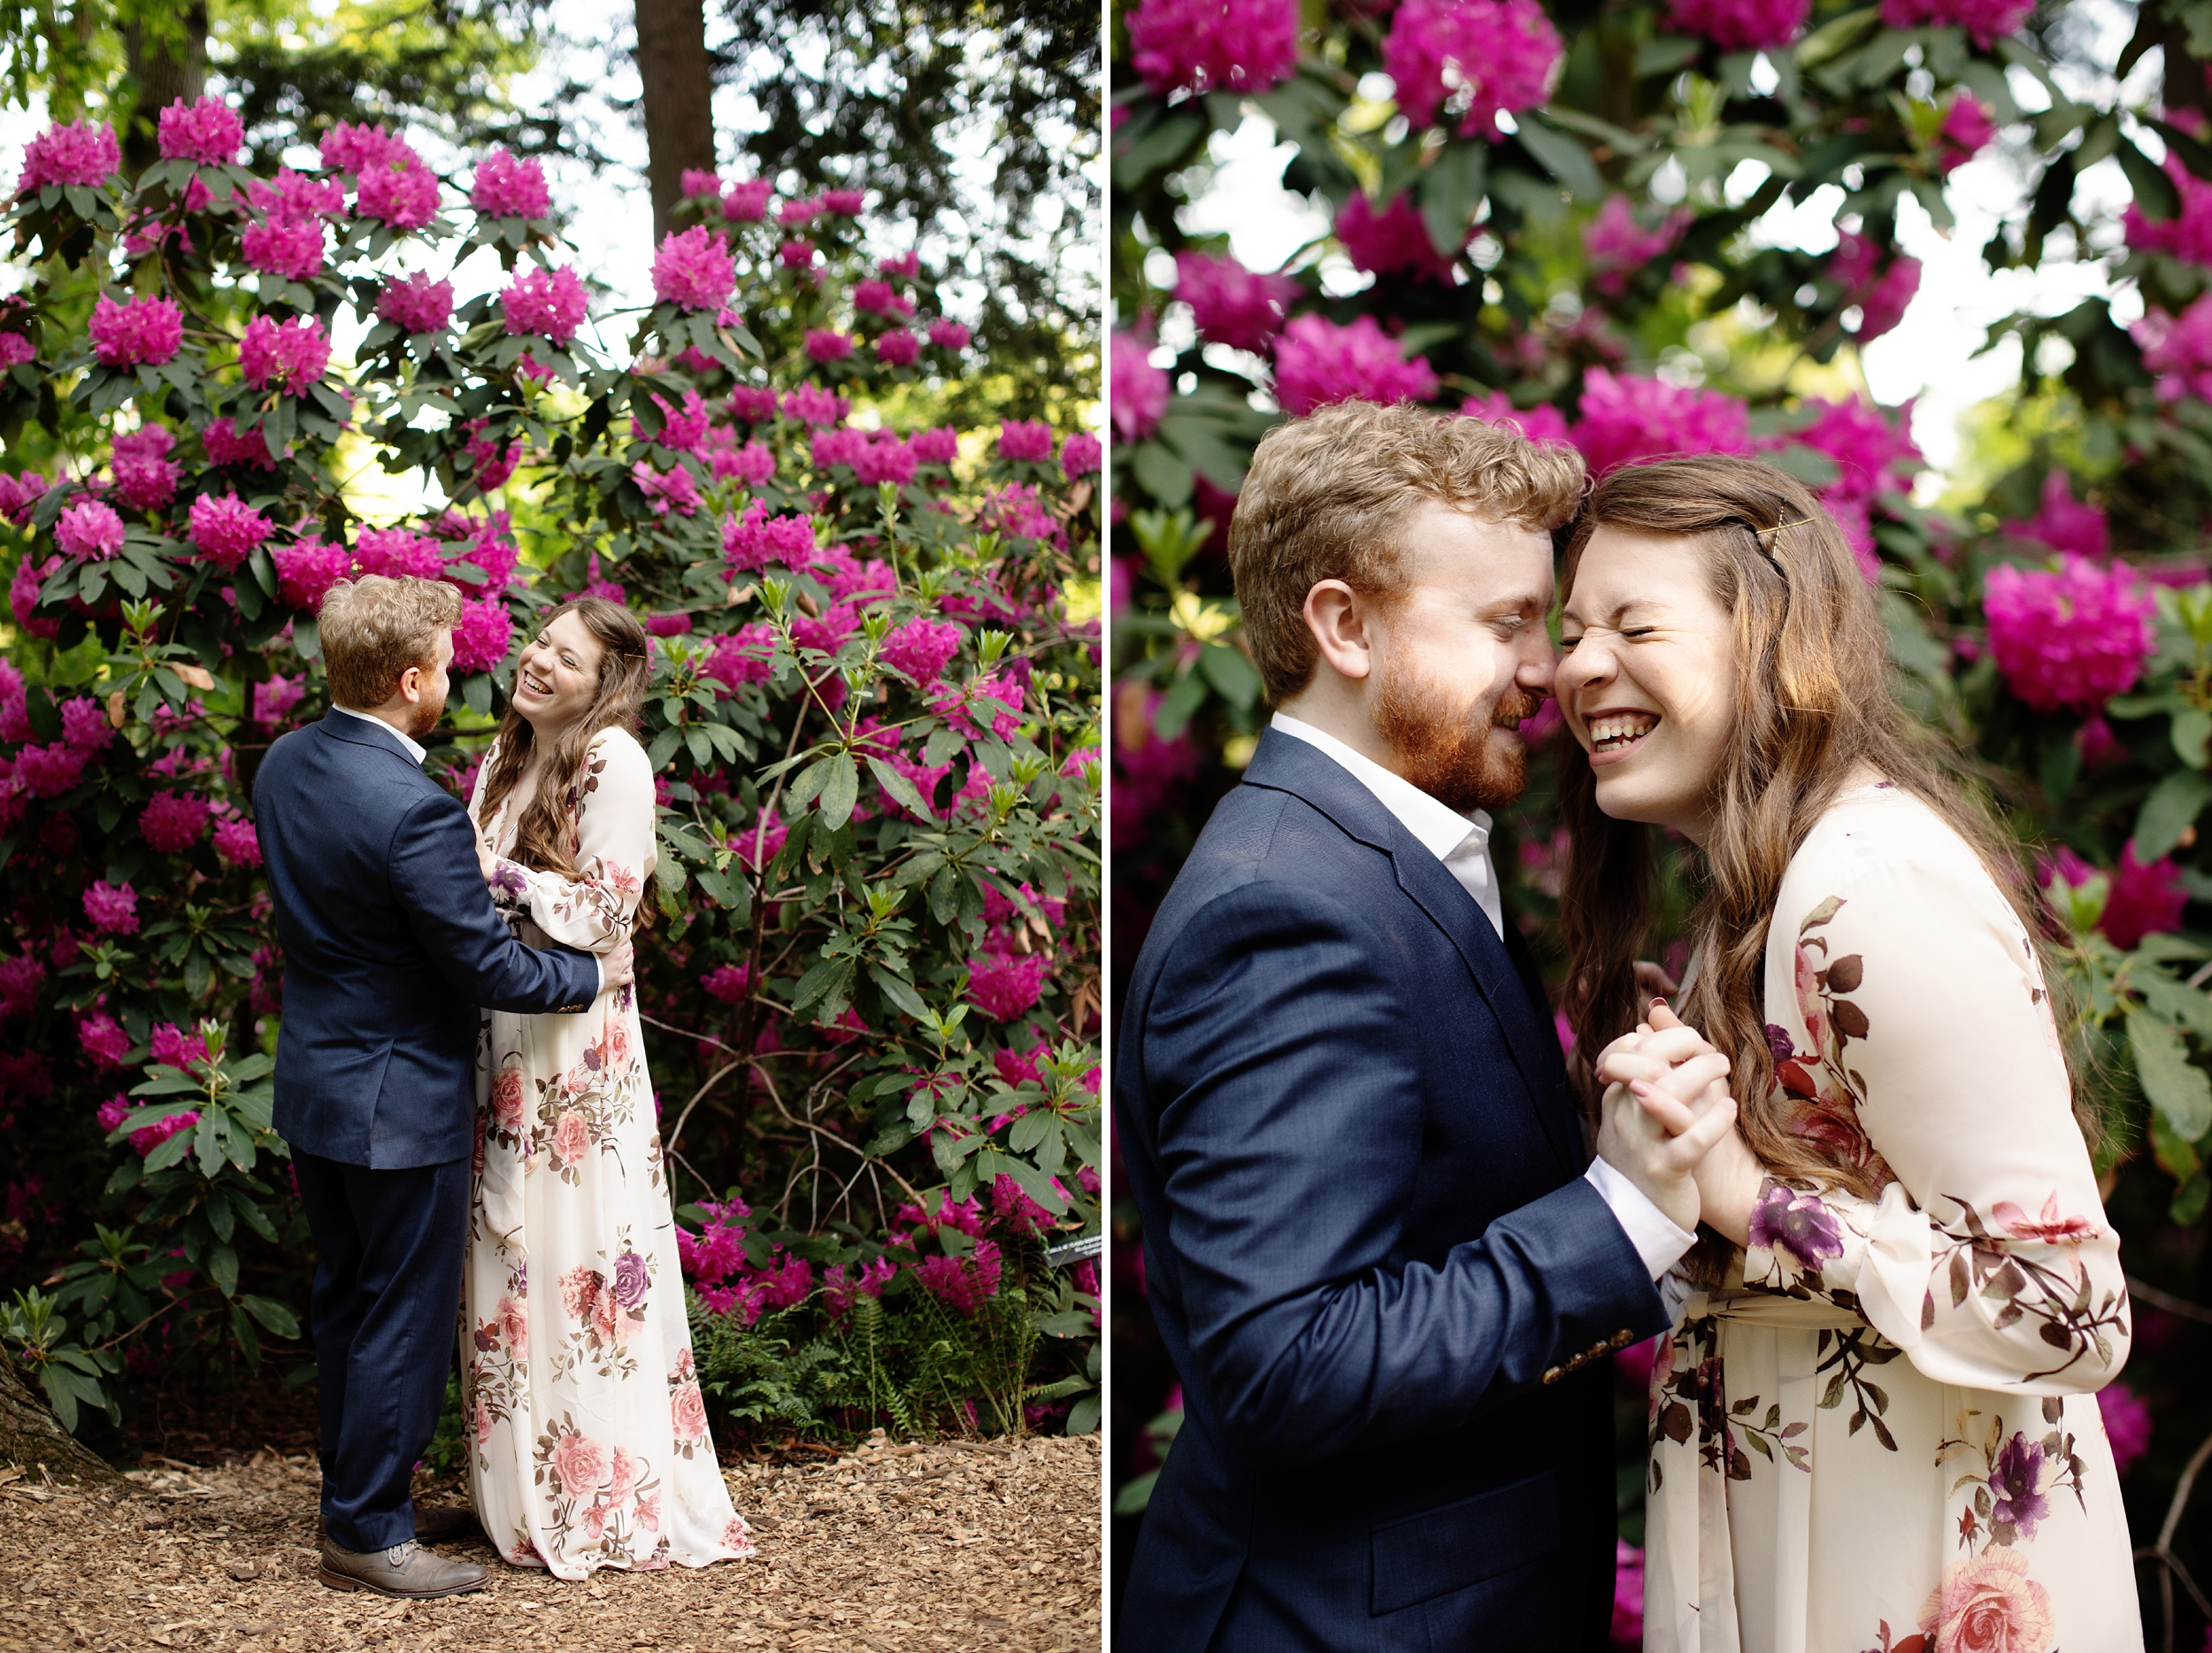 Longwood Gardens Spring Engagement Photos captured by Philadelphia Wedding Photographer Janae Rose Photography